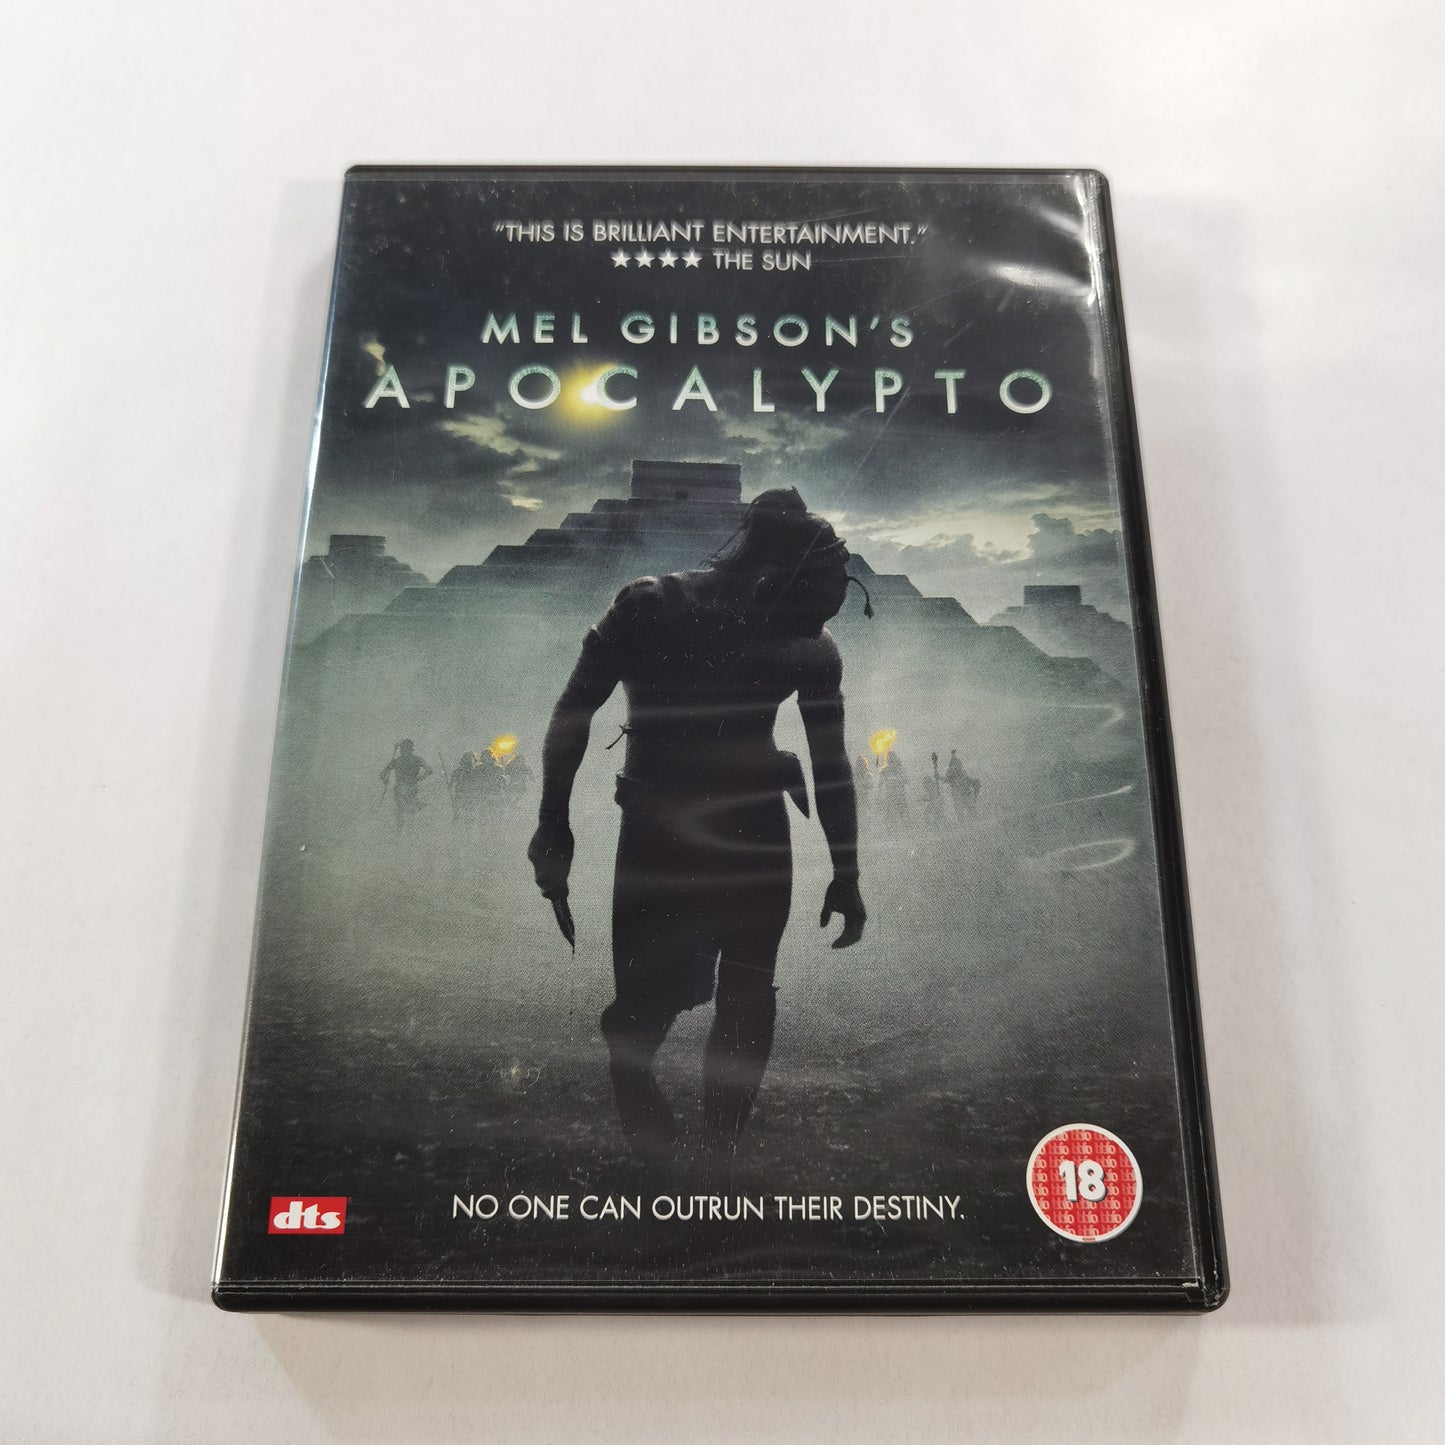 Apocalypto (2006) - DVD UK